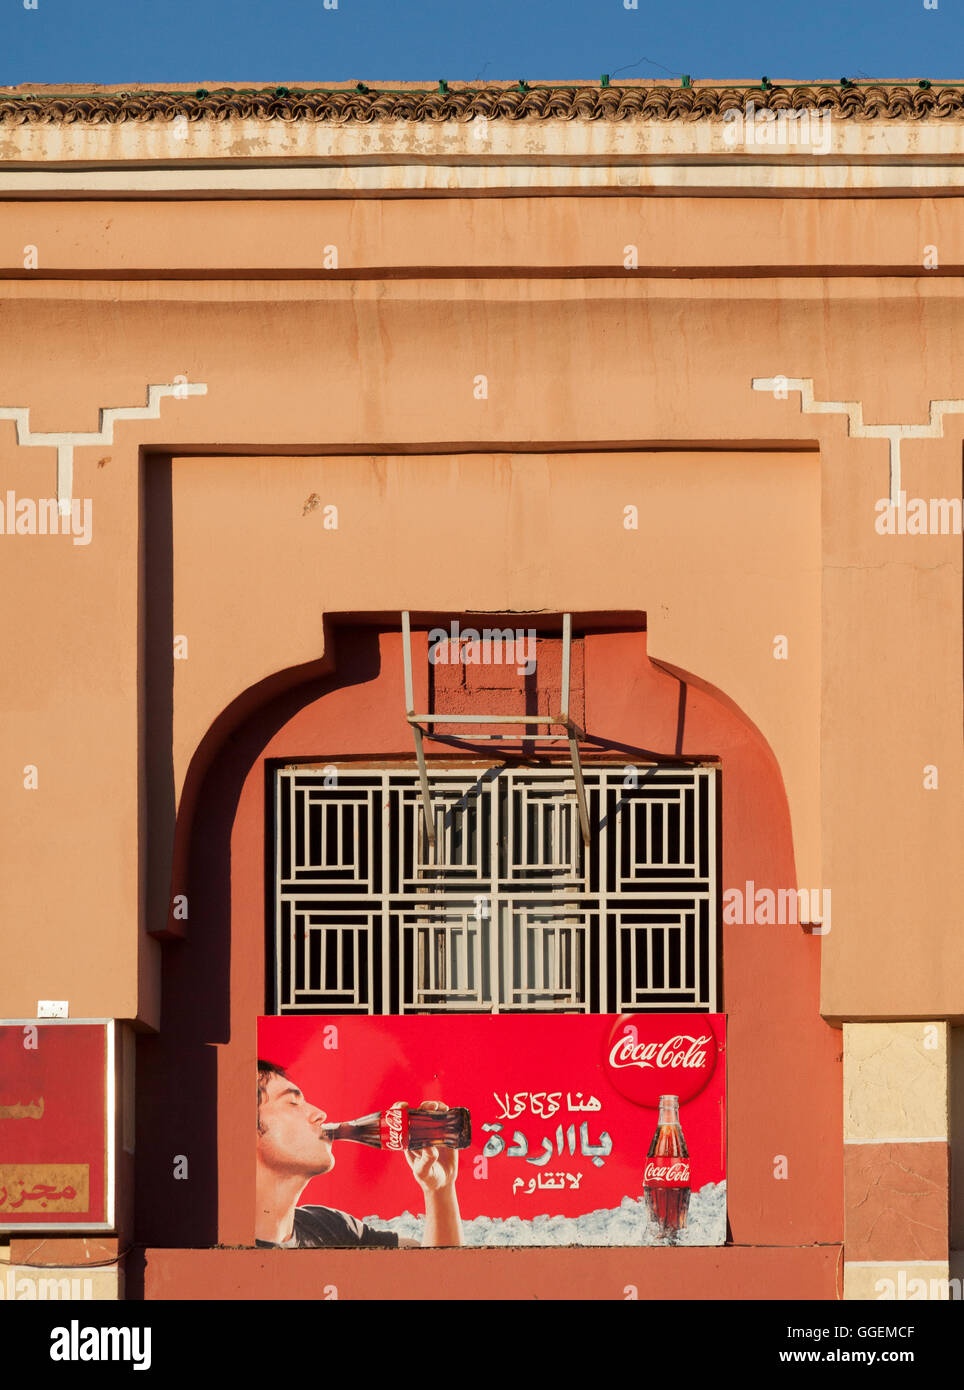 Eine Werbung für Coca Cola in der arabischen Sprache vor einem Geschäft in Ouarzazate, Marokko, Nordafrika. Stockfoto